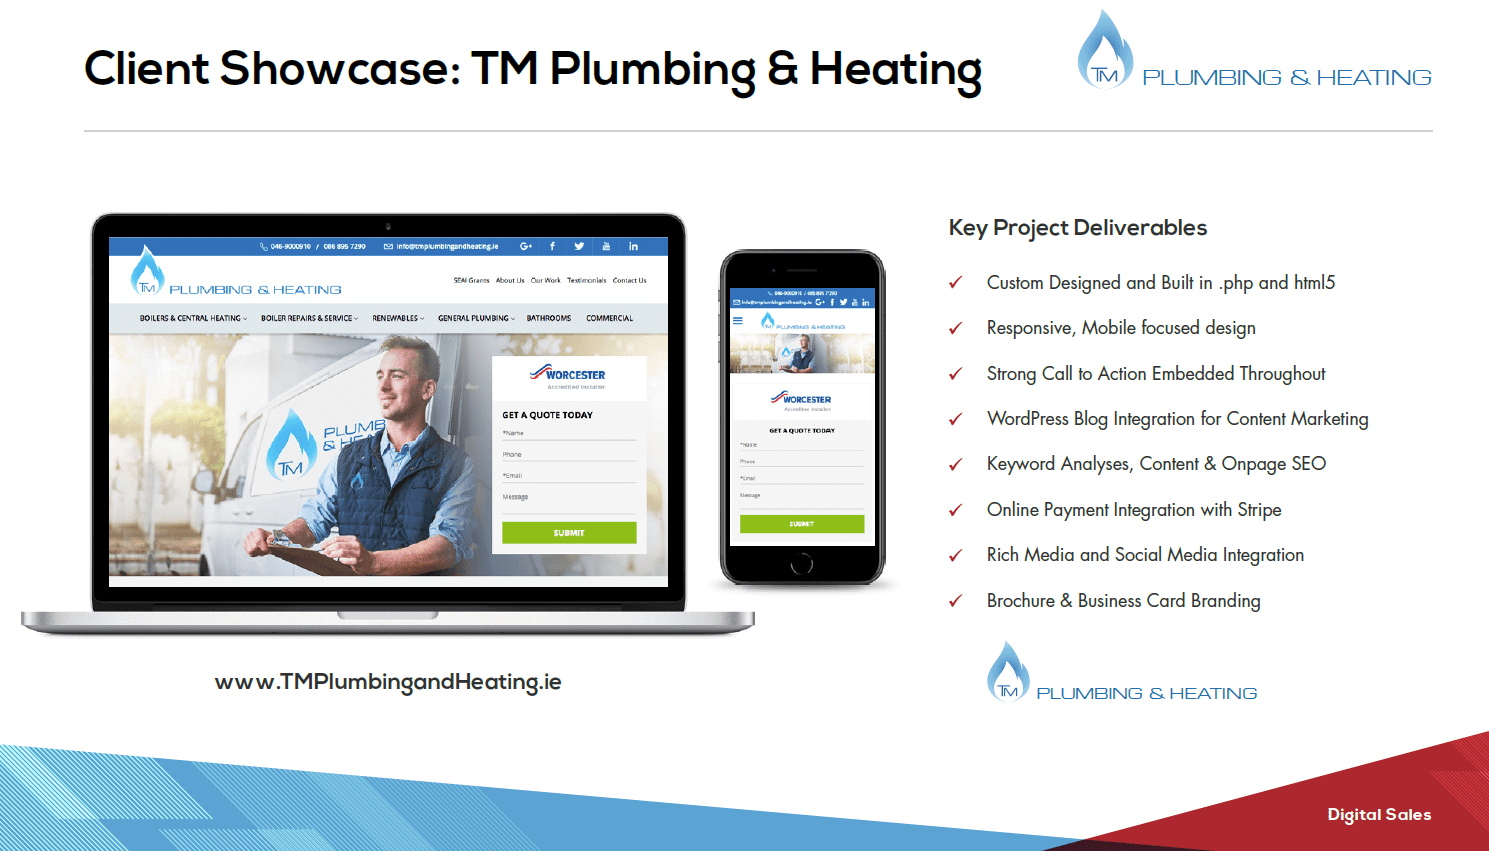 www.TMPlumbing&Heating.ie